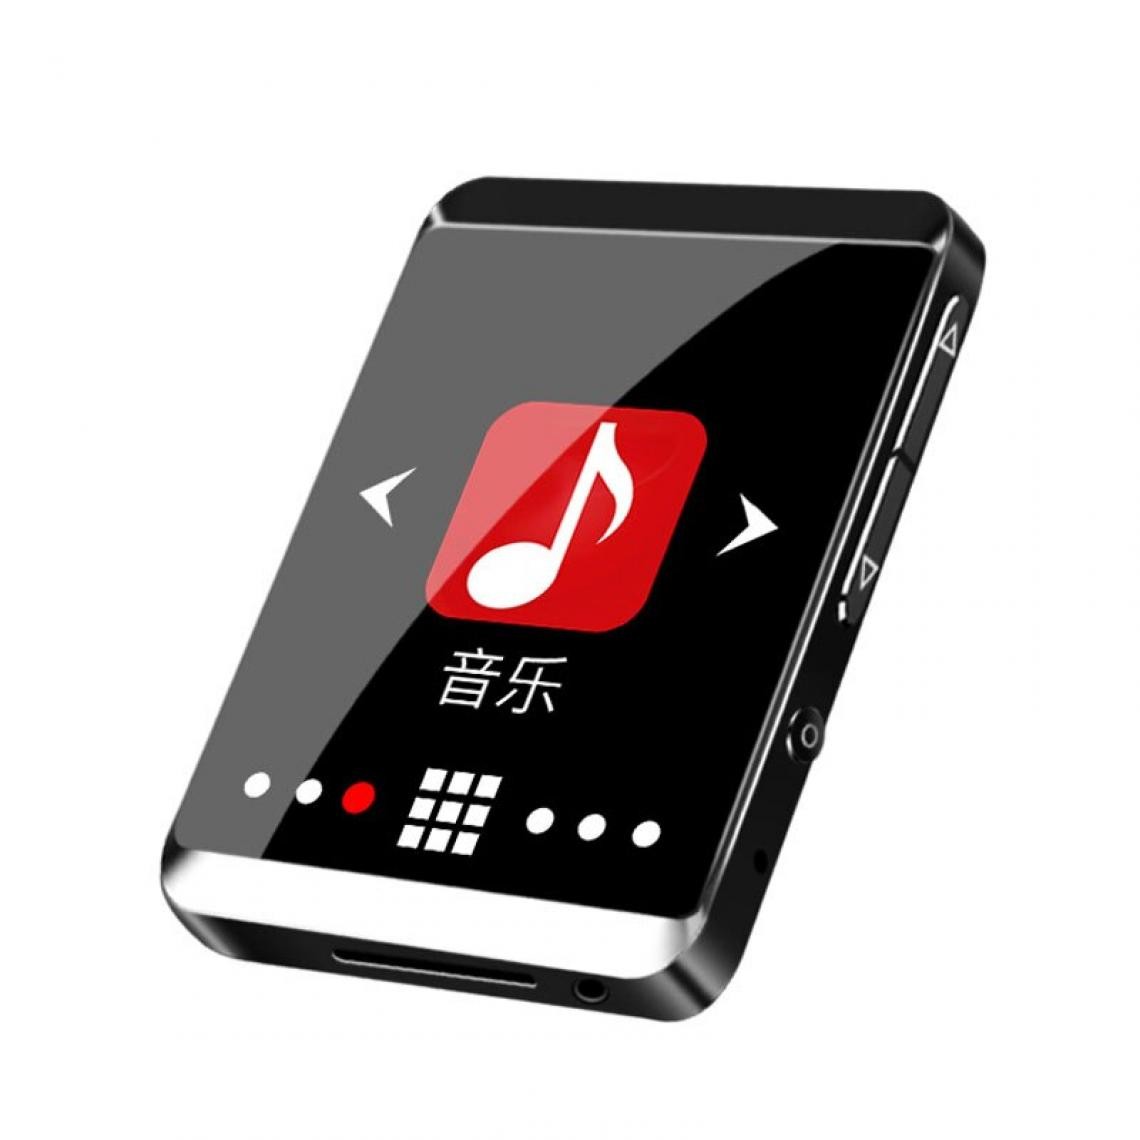 Universal - Suisse M5 Bluetooth MP3 Player Full Touch Screen 8 Go Sport Clip Mini Music MP3 avec FM, Enregistrement, Ebook, Horloge, Podomètre Lecteur MP3 - Radio, lecteur CD/MP3 enfant